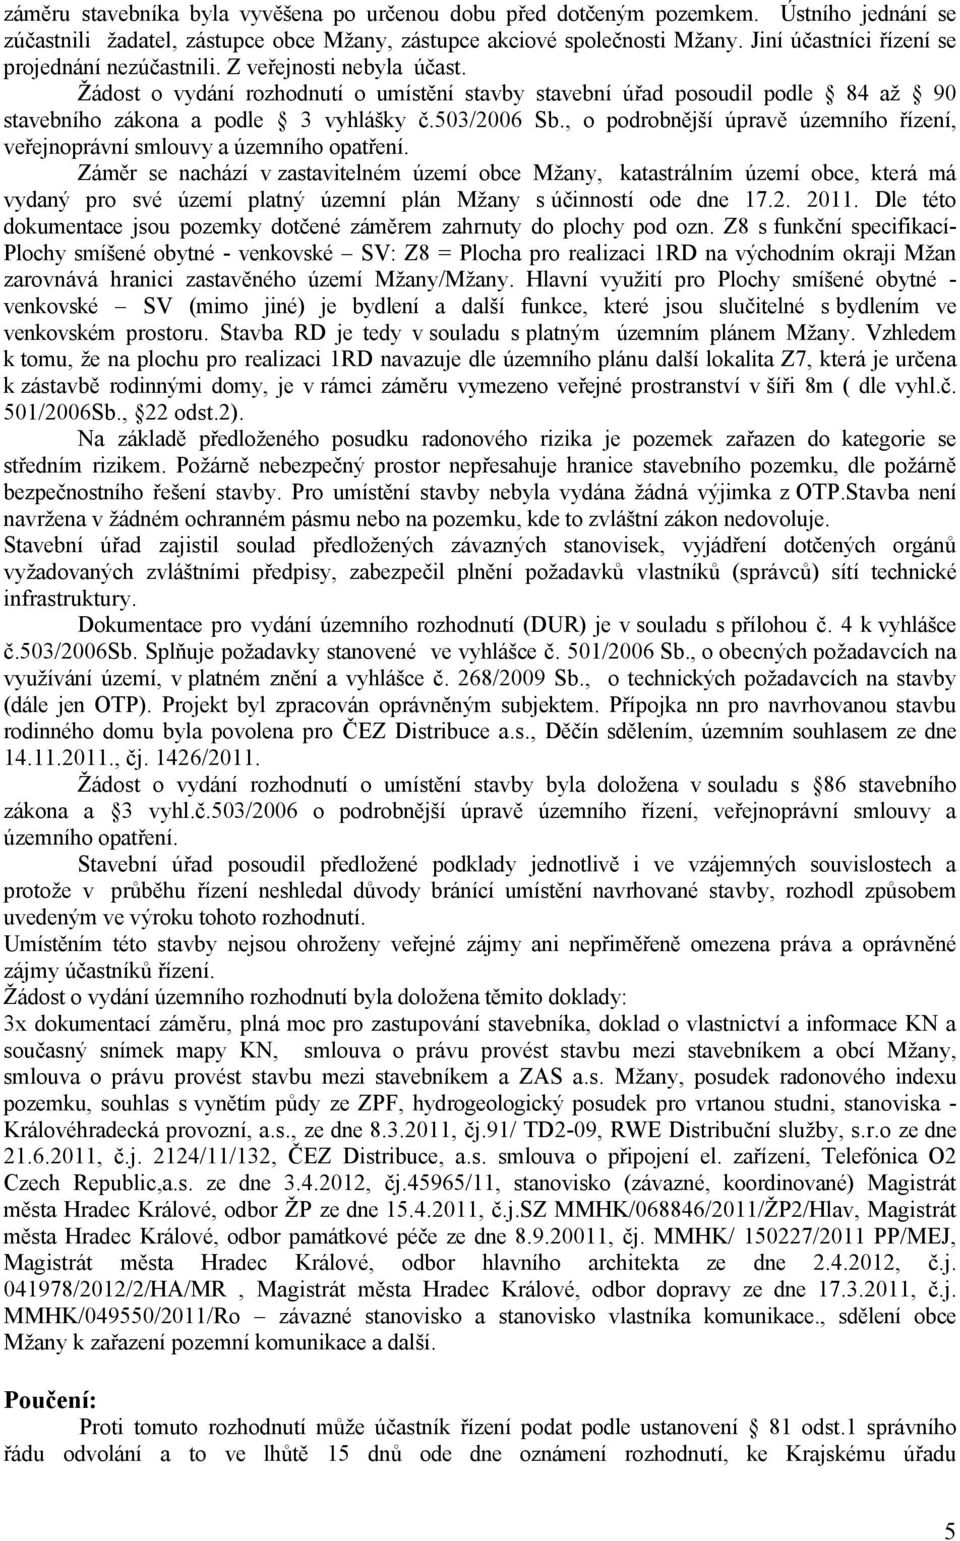 503/2006 Sb., o podrobnější úpravě územního řízení, veřejnoprávní smlouvy a územního opatření.